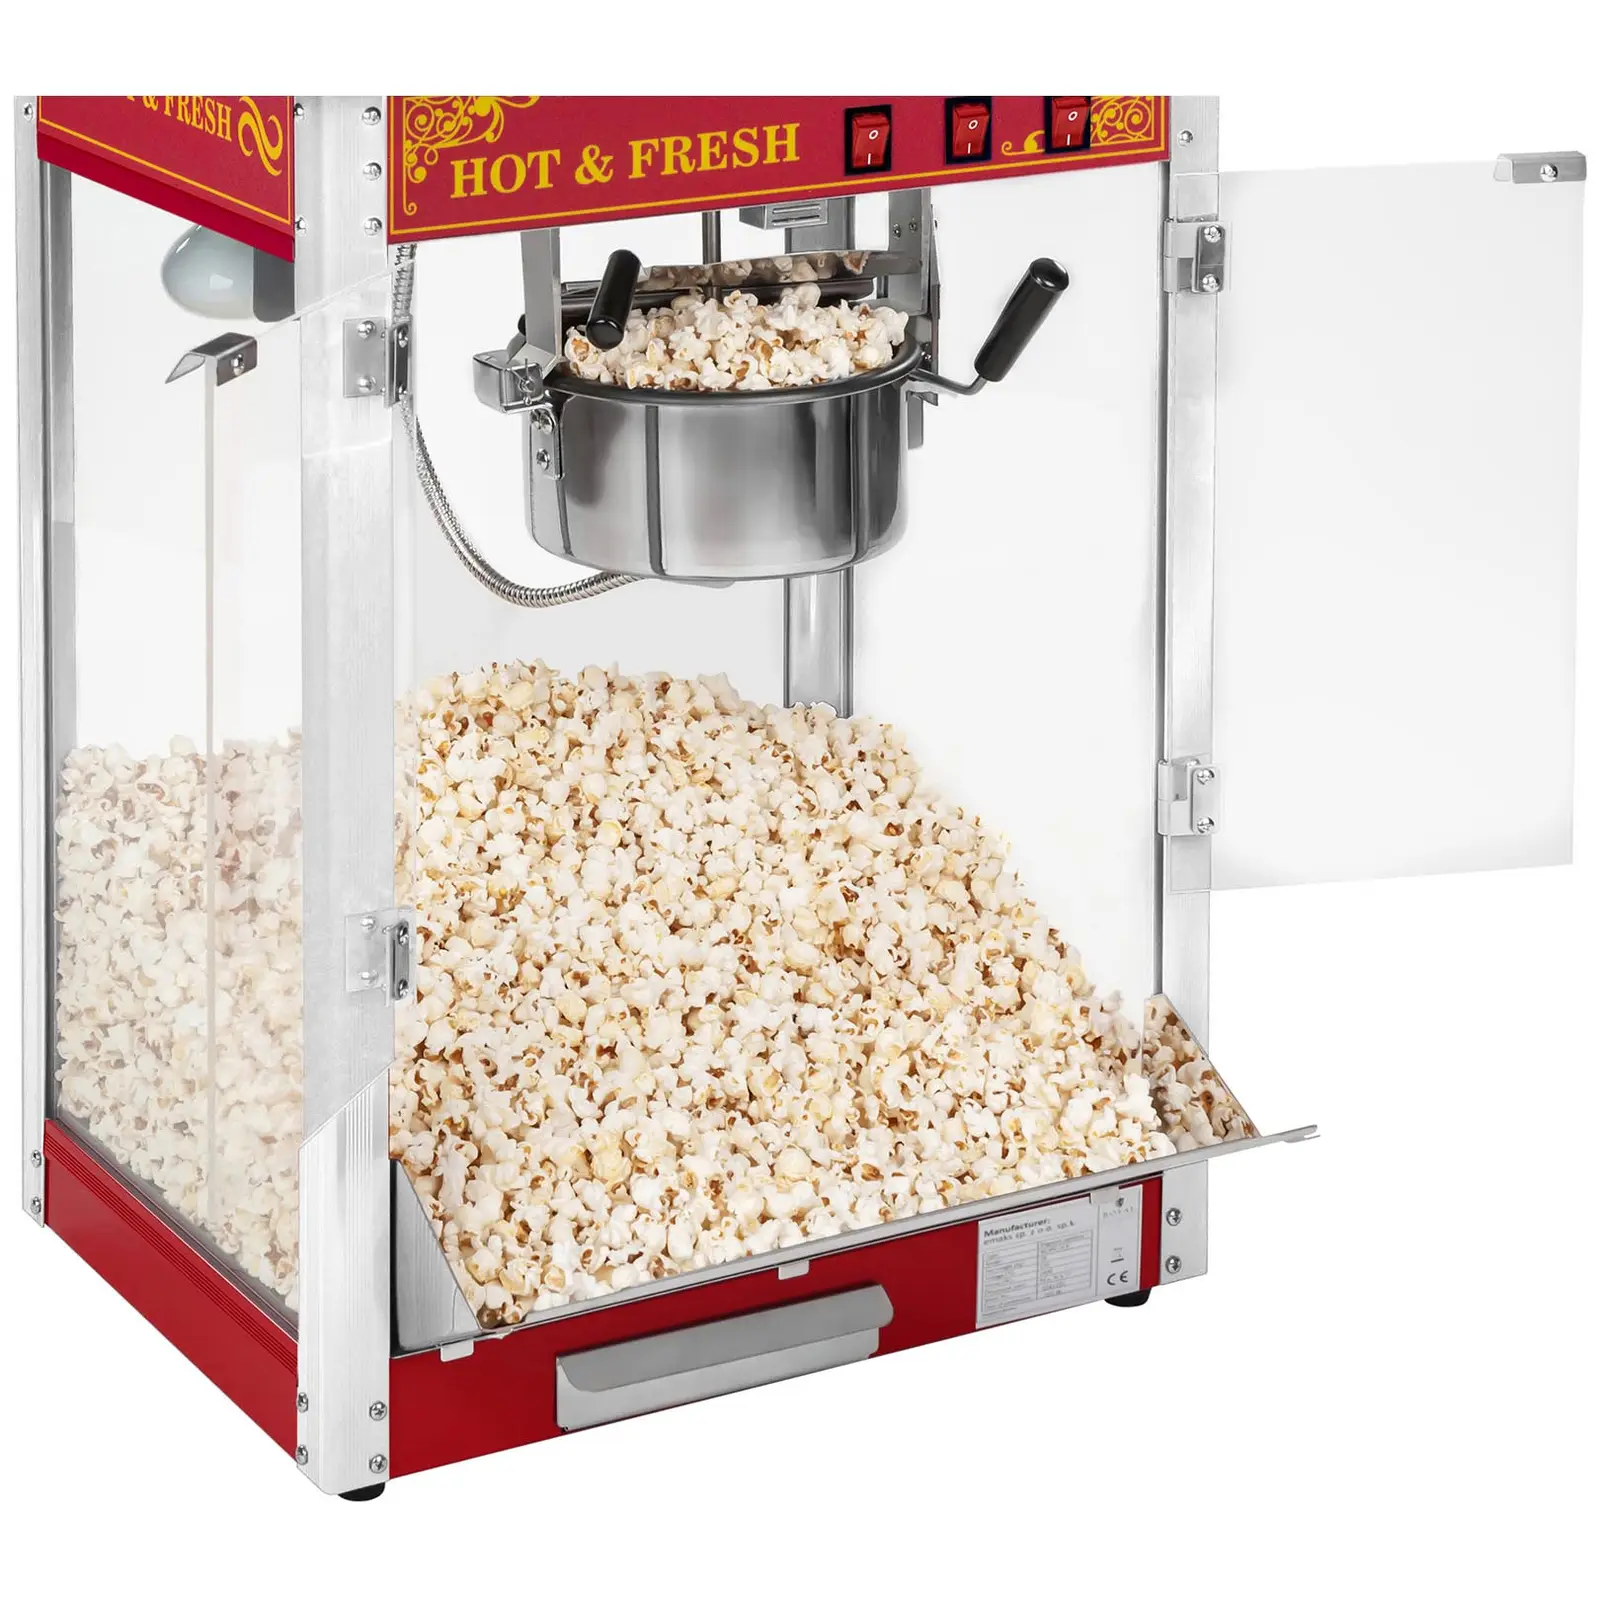 Popcornmaschine mit Wagen - Retro-Design - rot